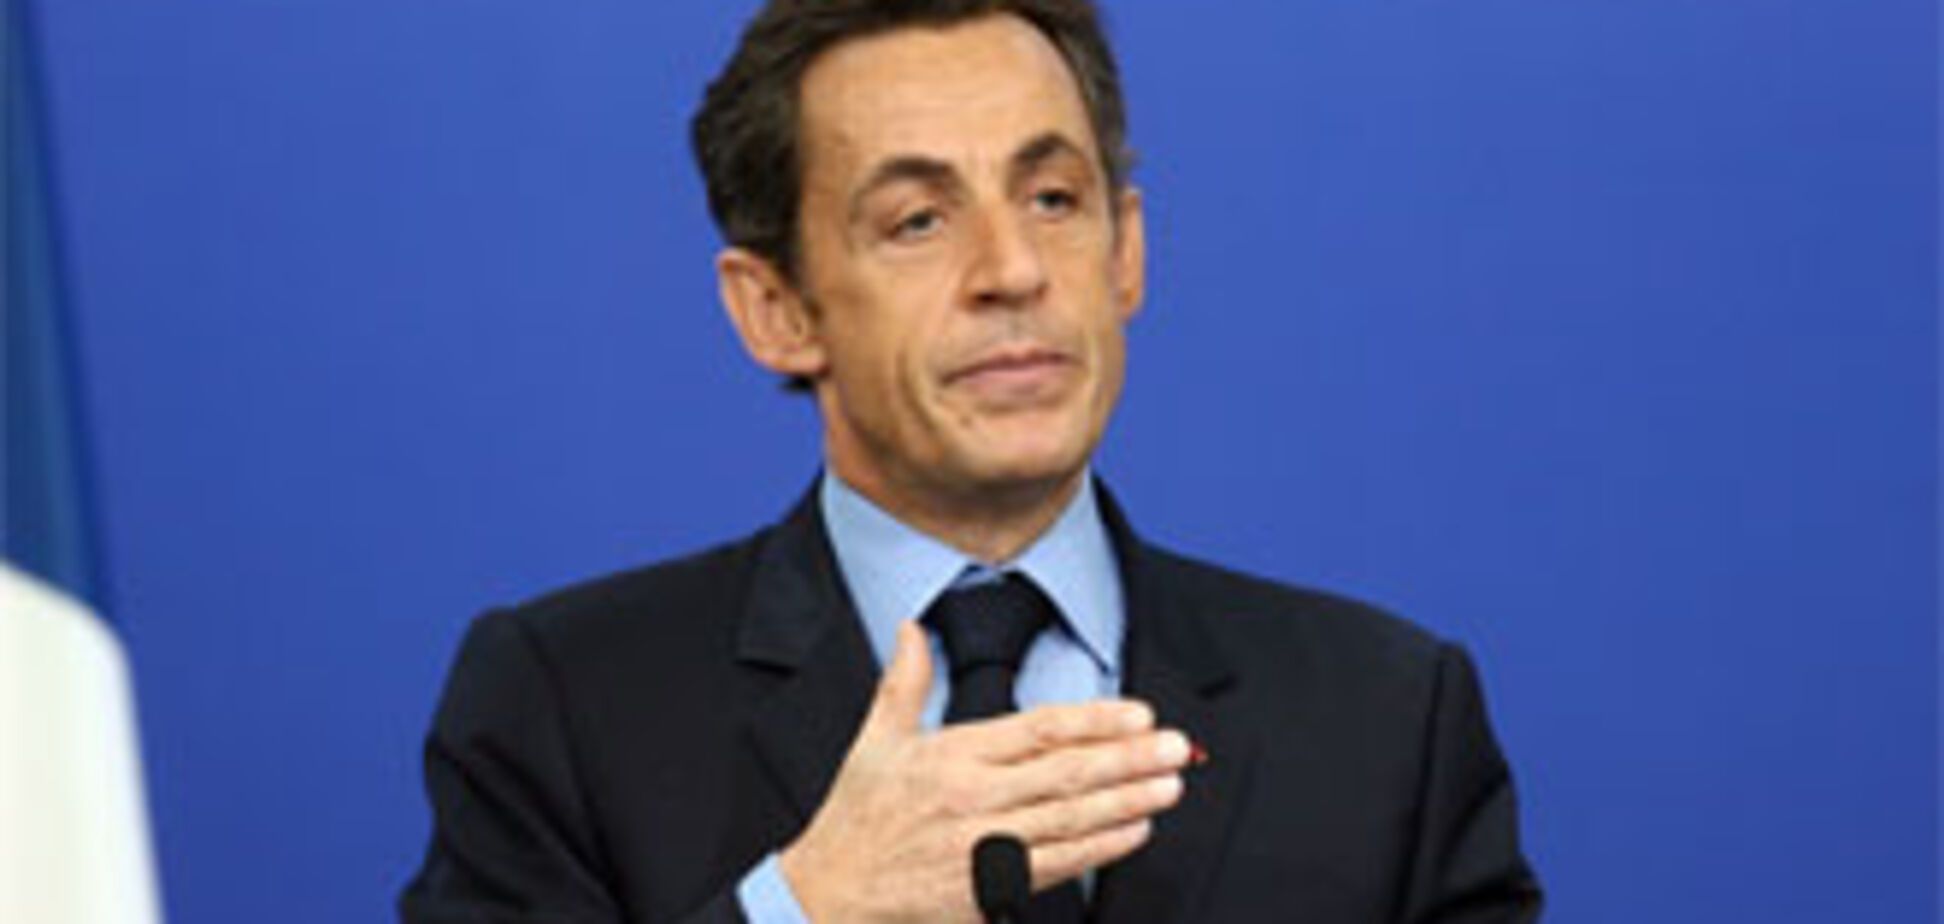 Син Саркозі не витримав критики і здався (ФОТО)